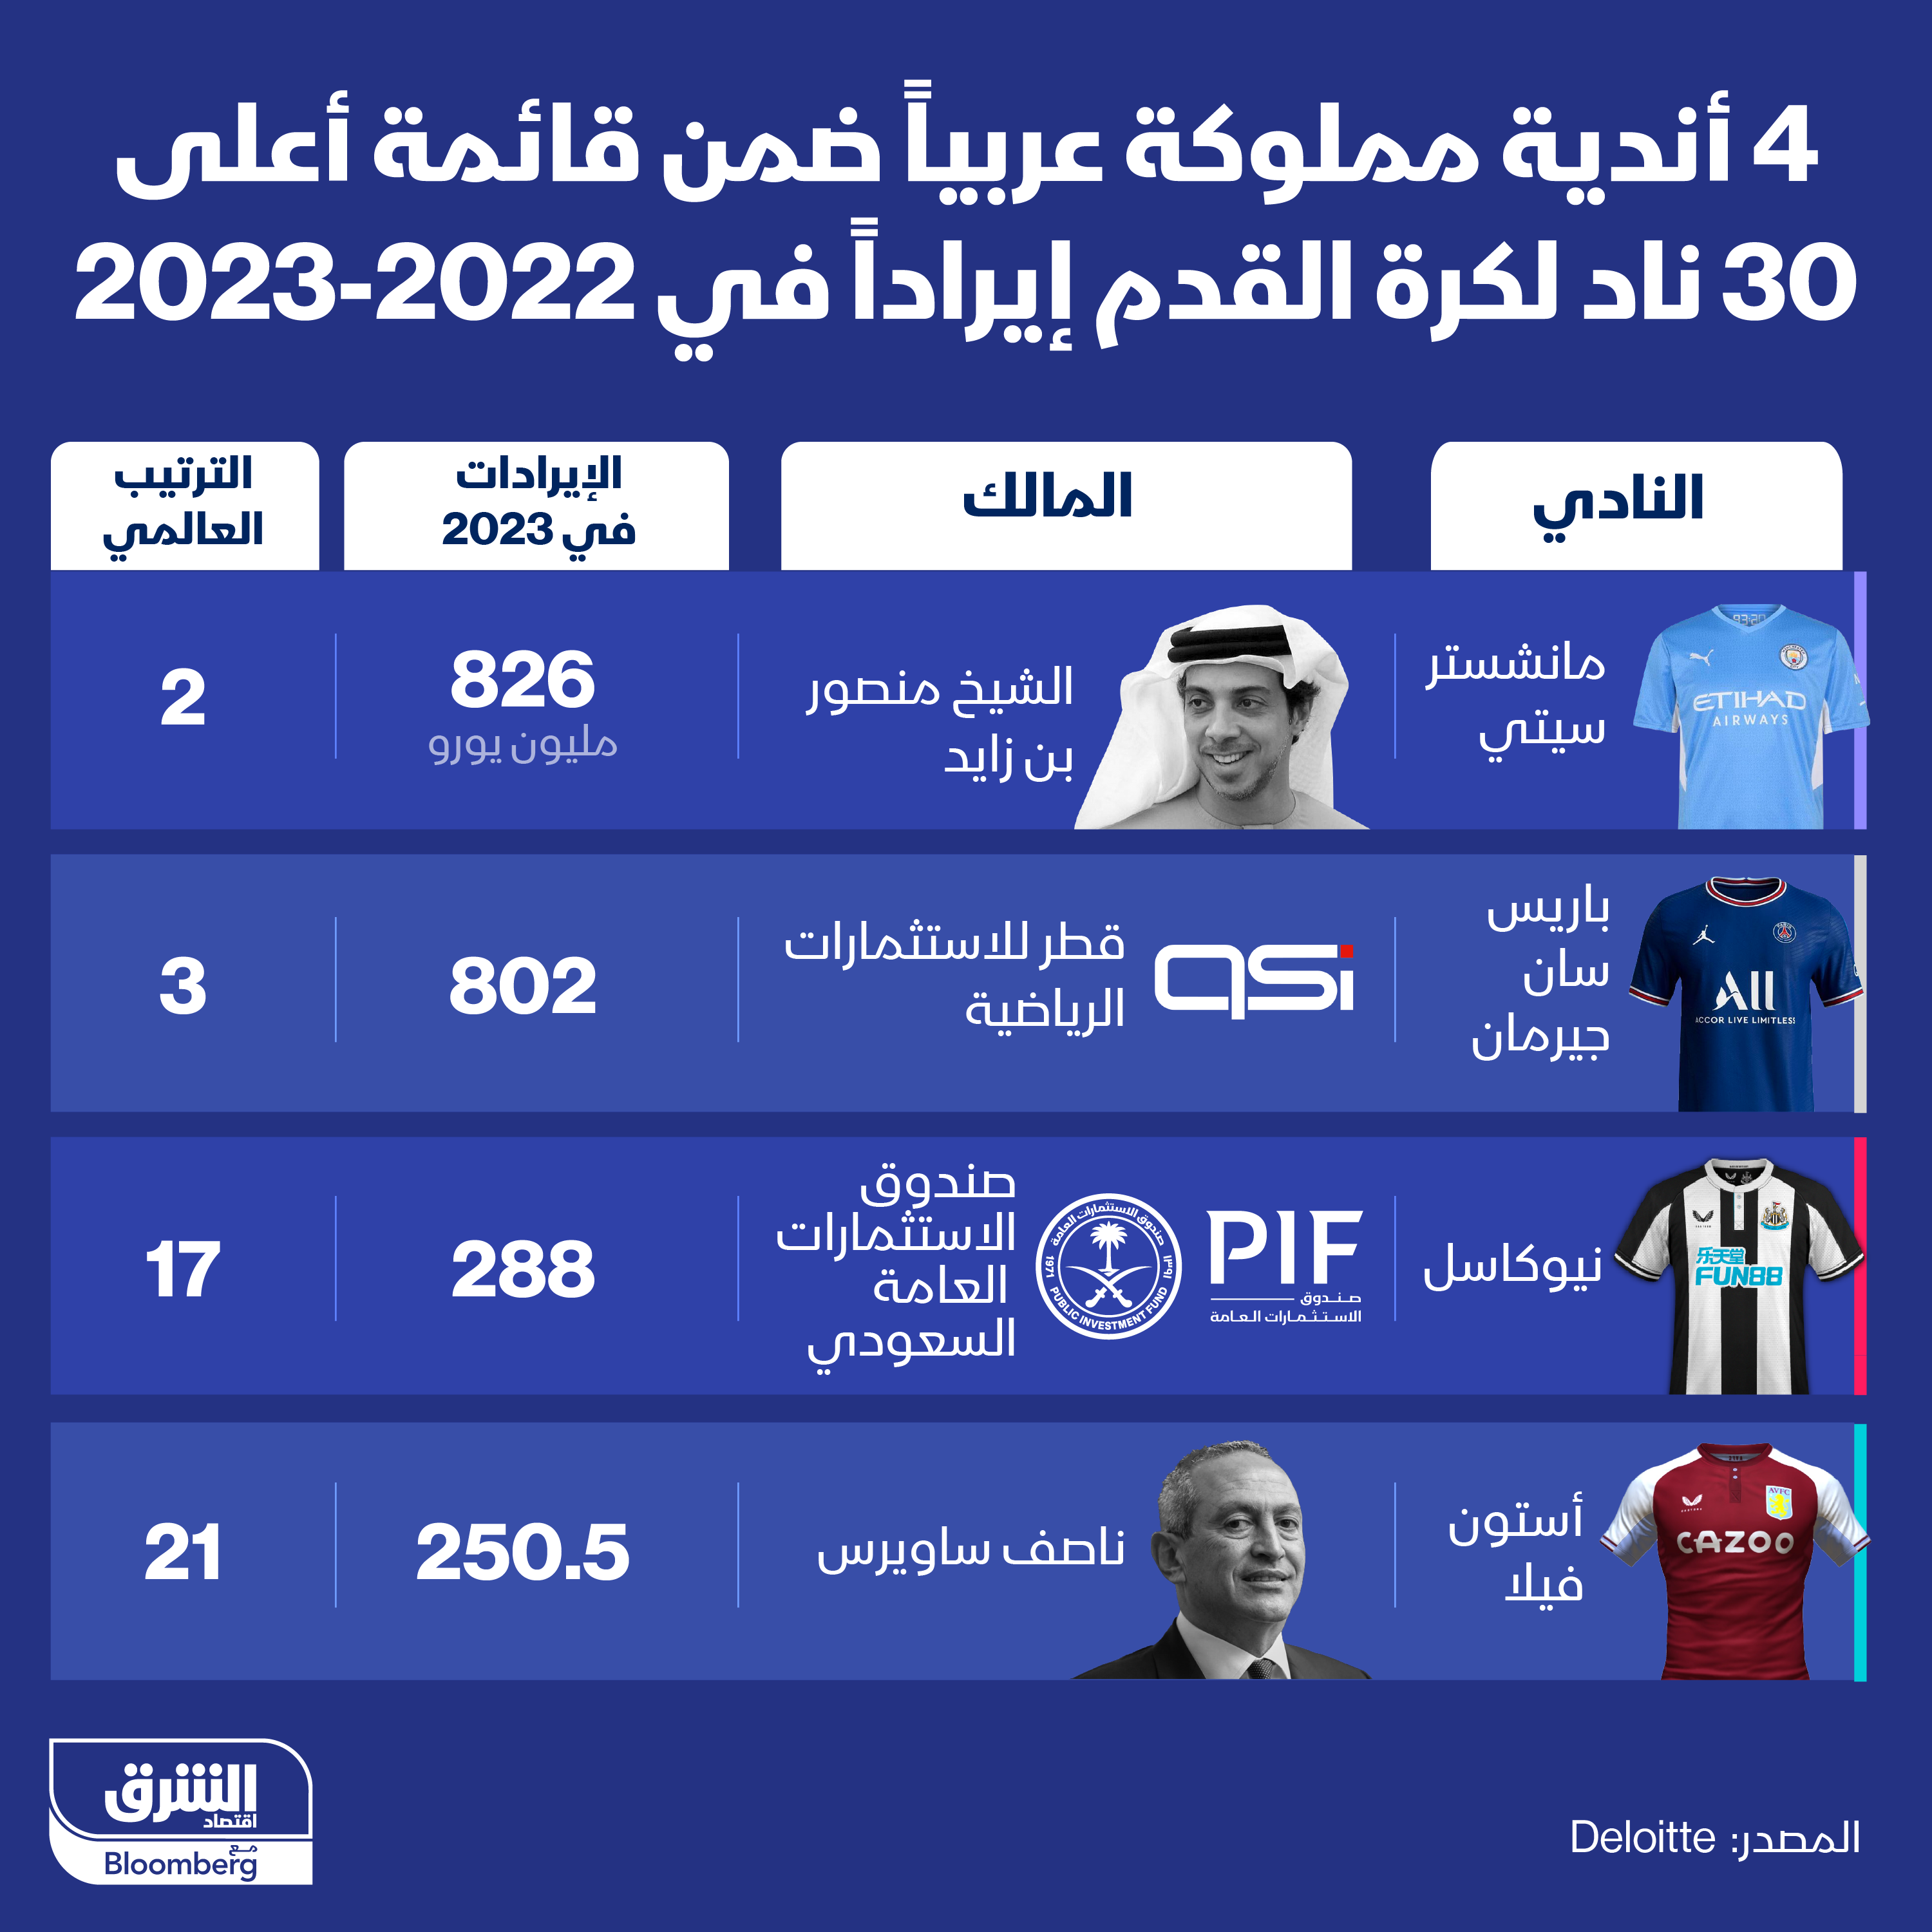 4 أندية مملوكة عربياً ضمن قائمة أعلى 30 نادياً لكرة القدم إيراداً في 2022-2023